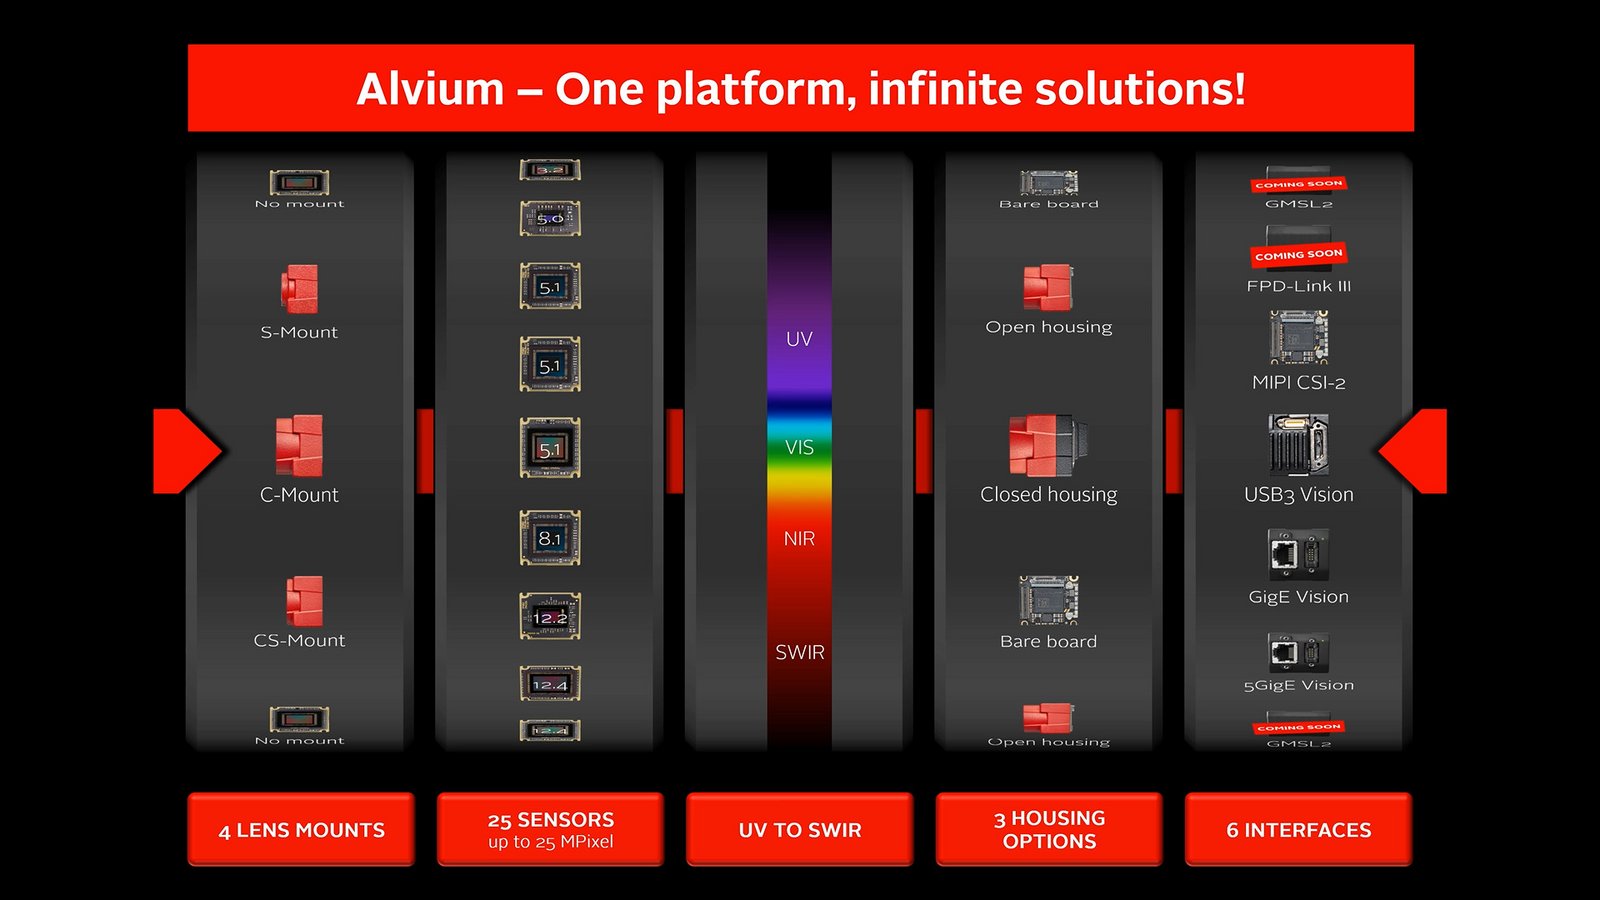 ALvium -Onde platforn, infinite solutions!